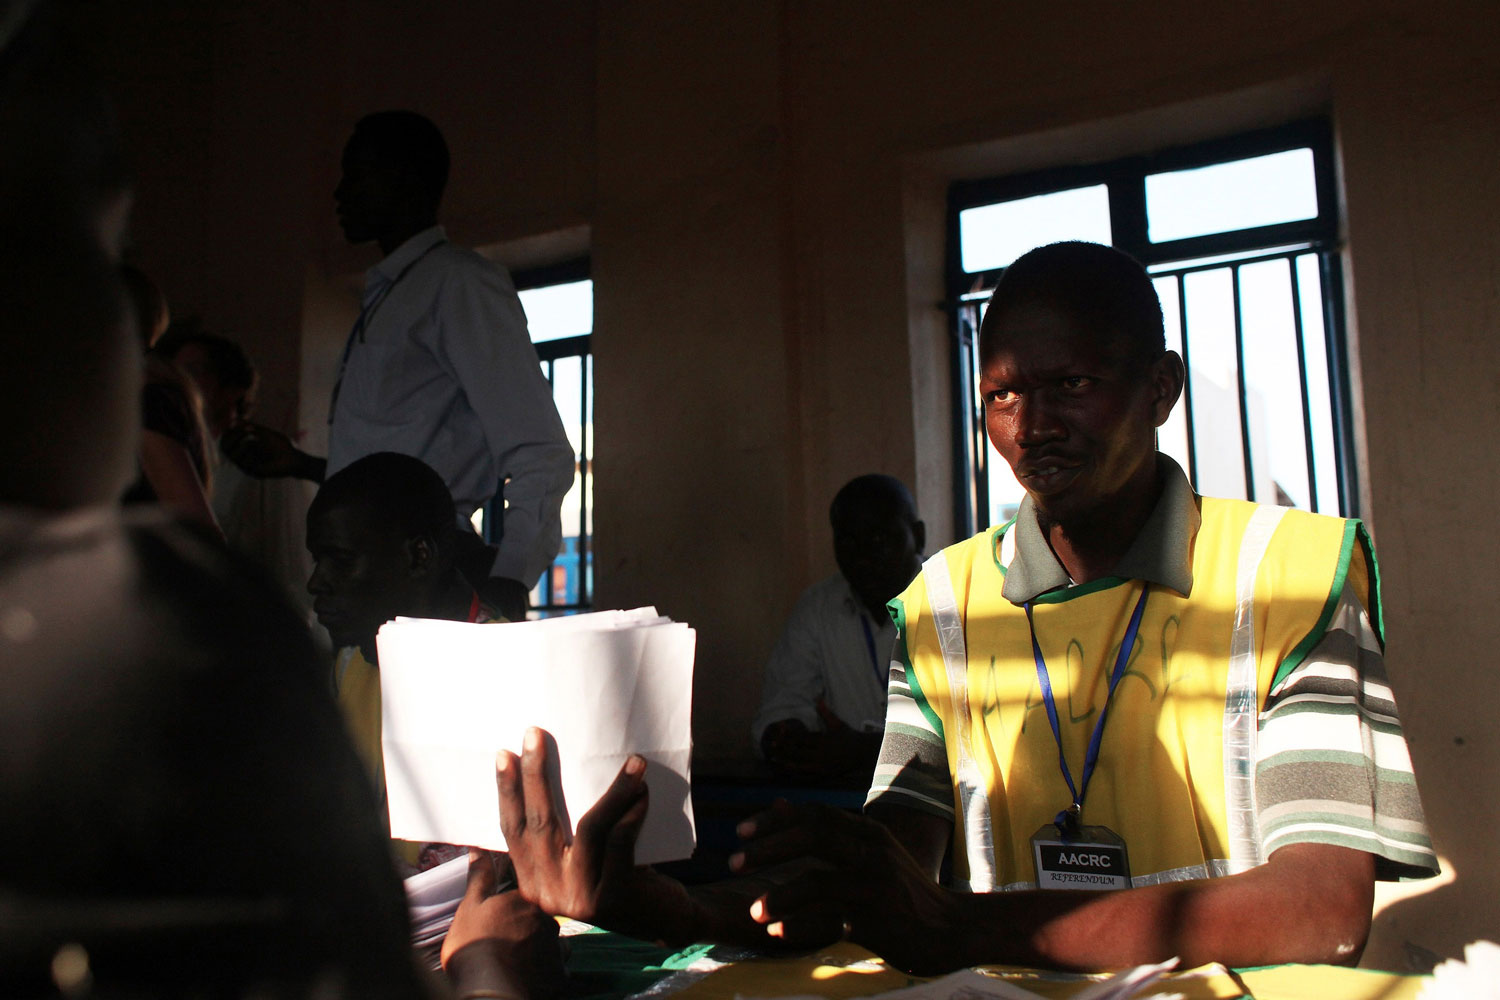 Hoy se conocerán los resultados del referéndum de Abyei, en la frontera entre Sudán y Sudán del Sur